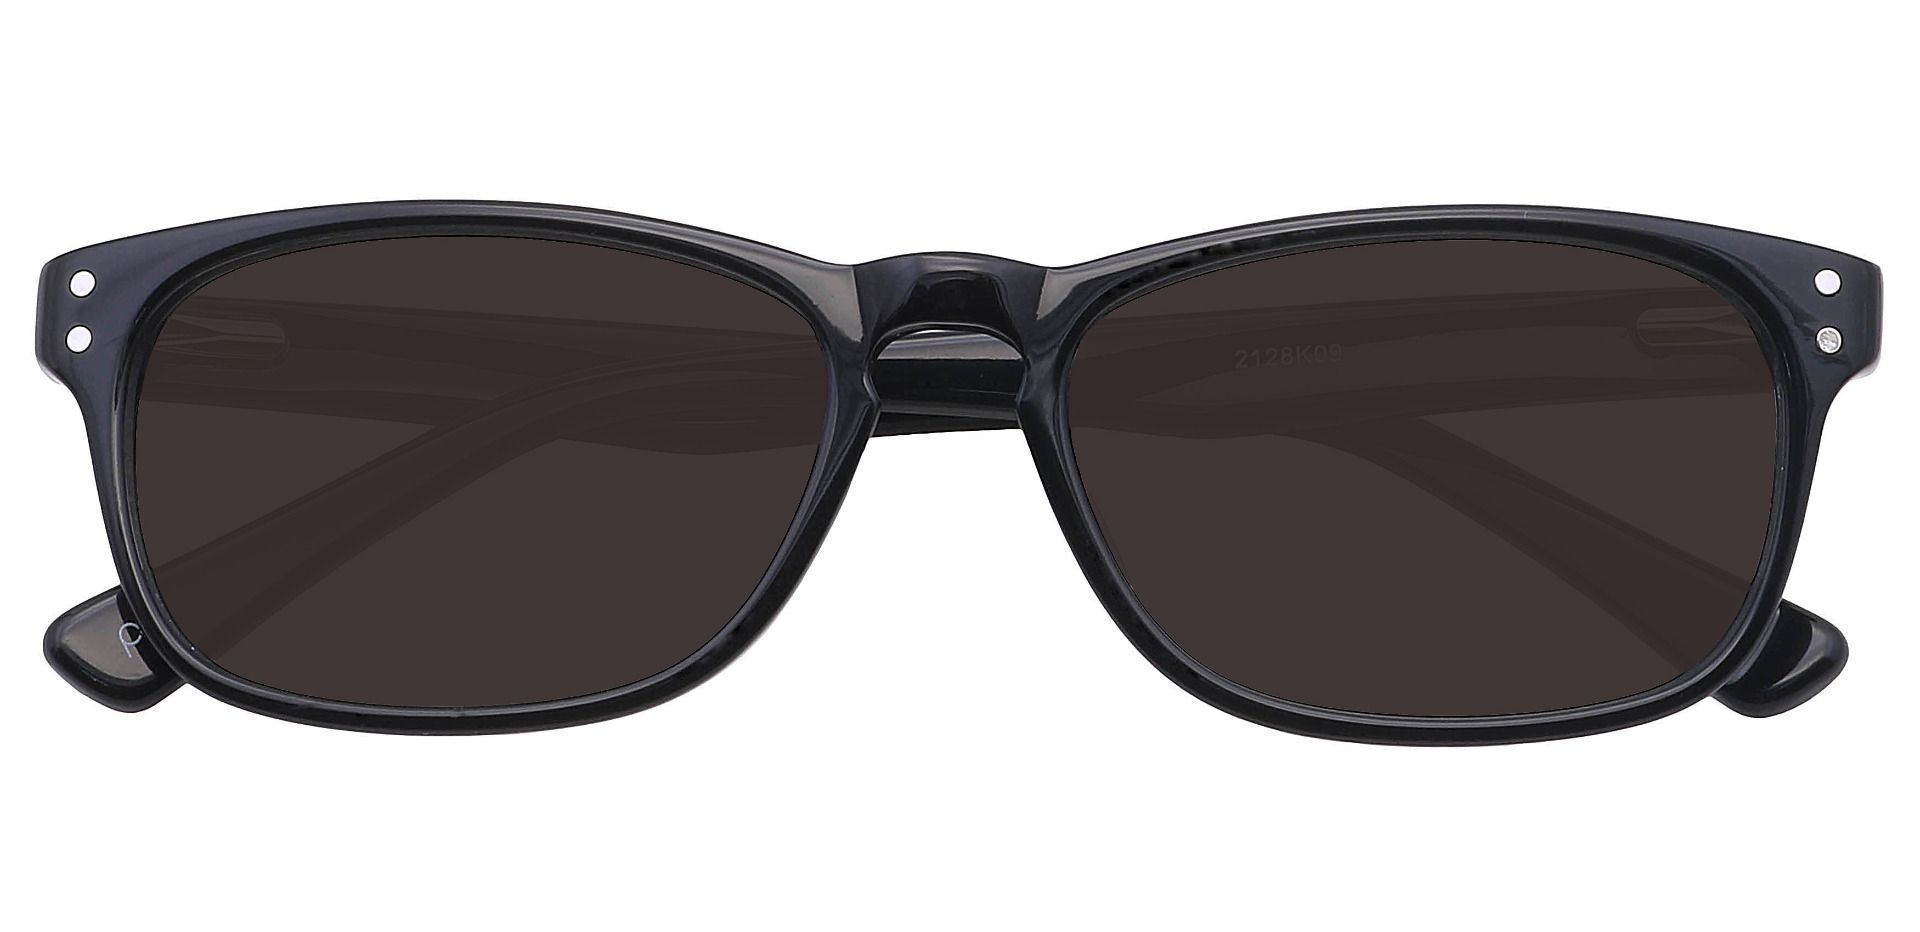 Morris Rectangle Progressive Sunglasses - Black Frame With Gray Lenses